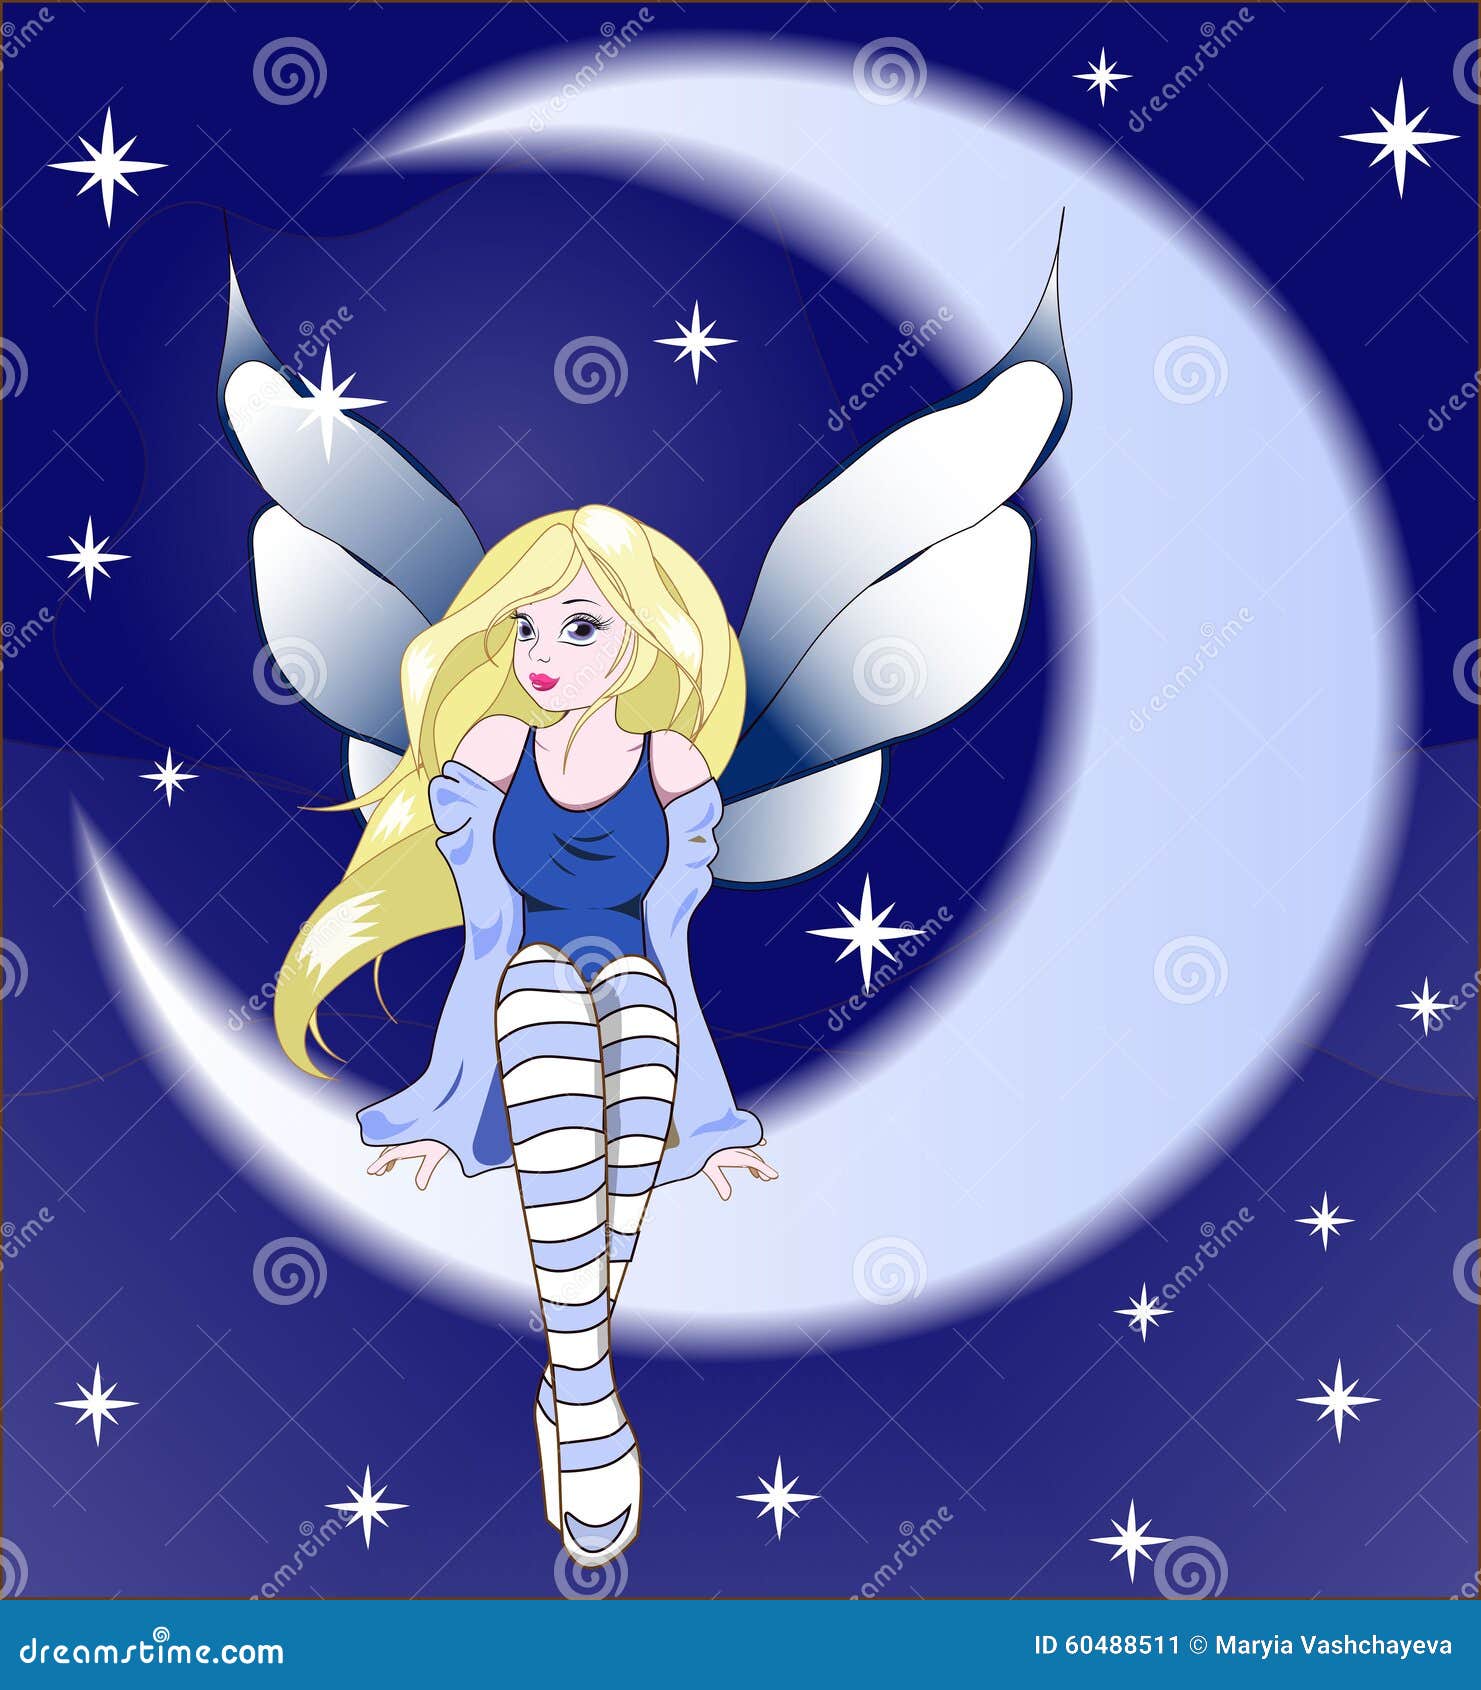 Good night midnight fairy stock illustration. Illustration of stars